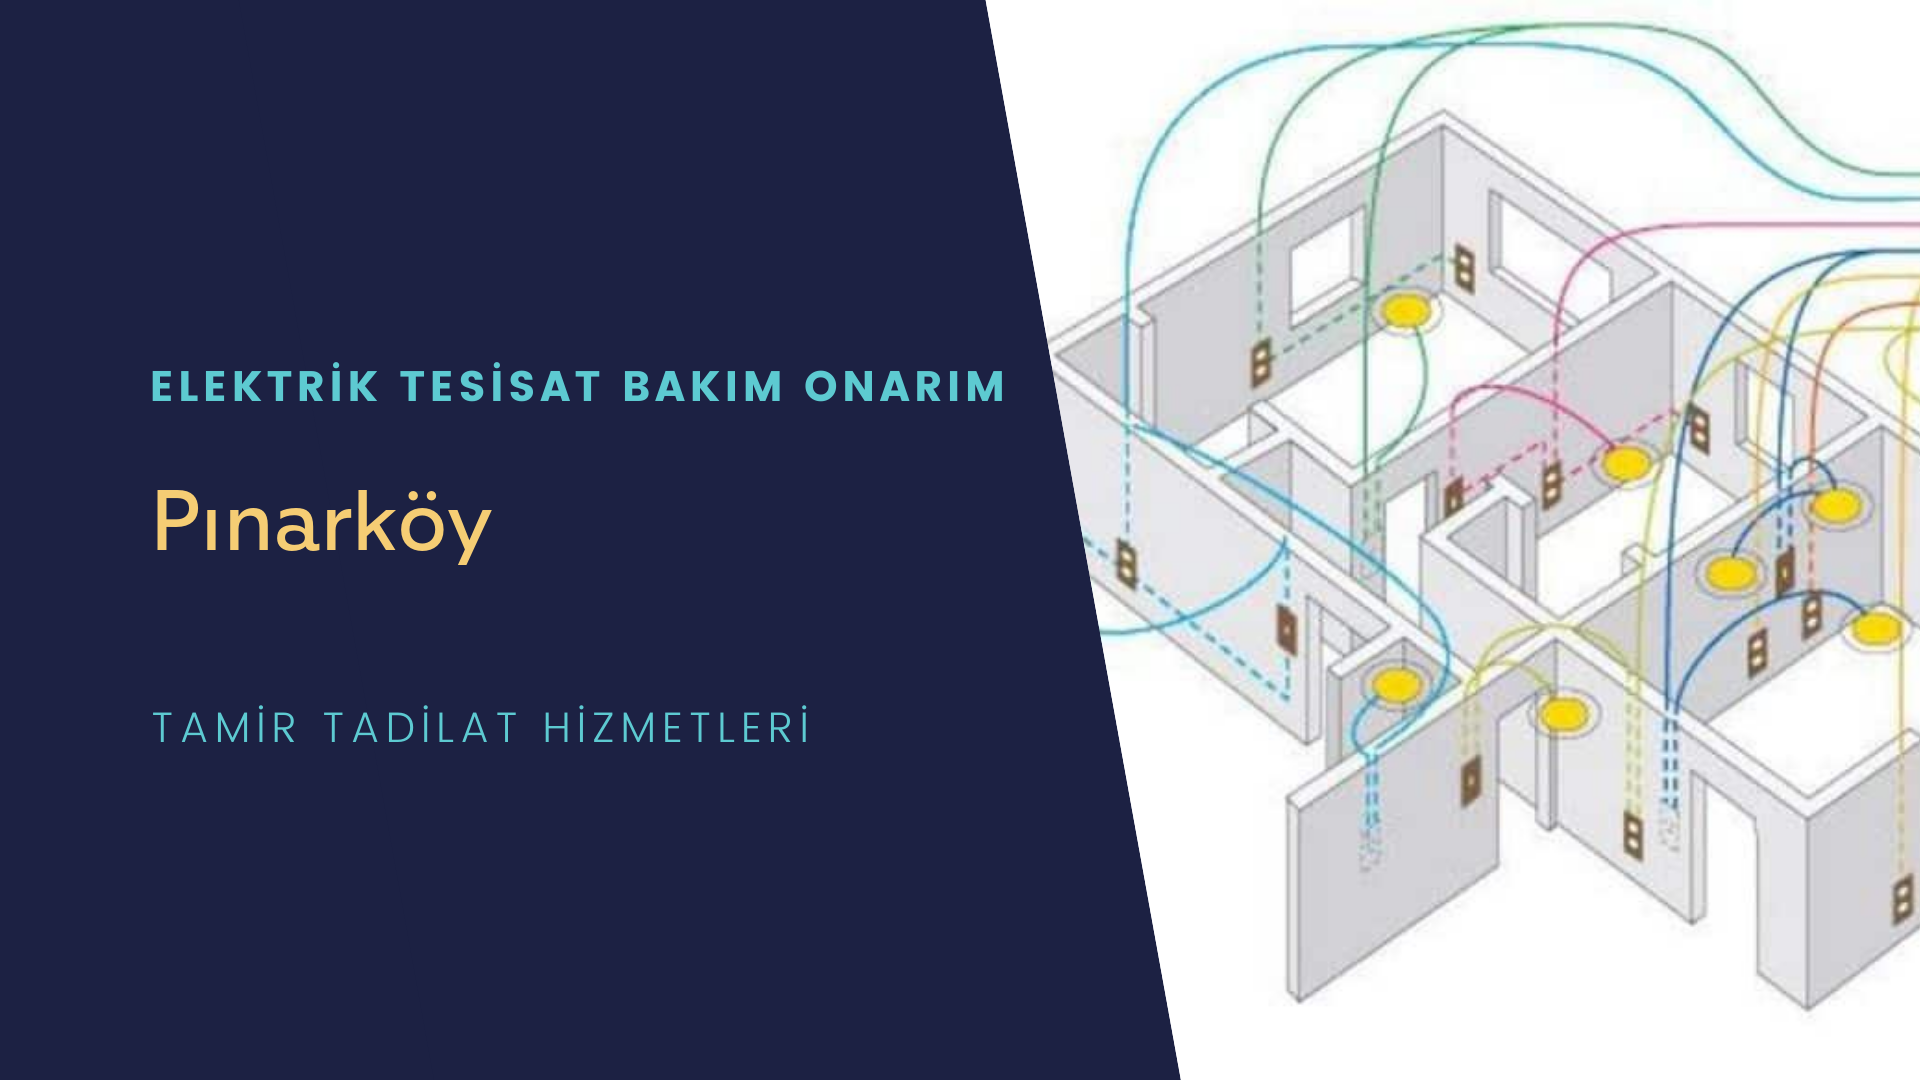 Pınarköy'de elektrik tesisatı ustalarımı arıyorsunuz doğru adrestenizi Pınarköy elektrik tesisatı ustalarımız 7/24 sizlere hizmet vermekten mutluluk duyar.